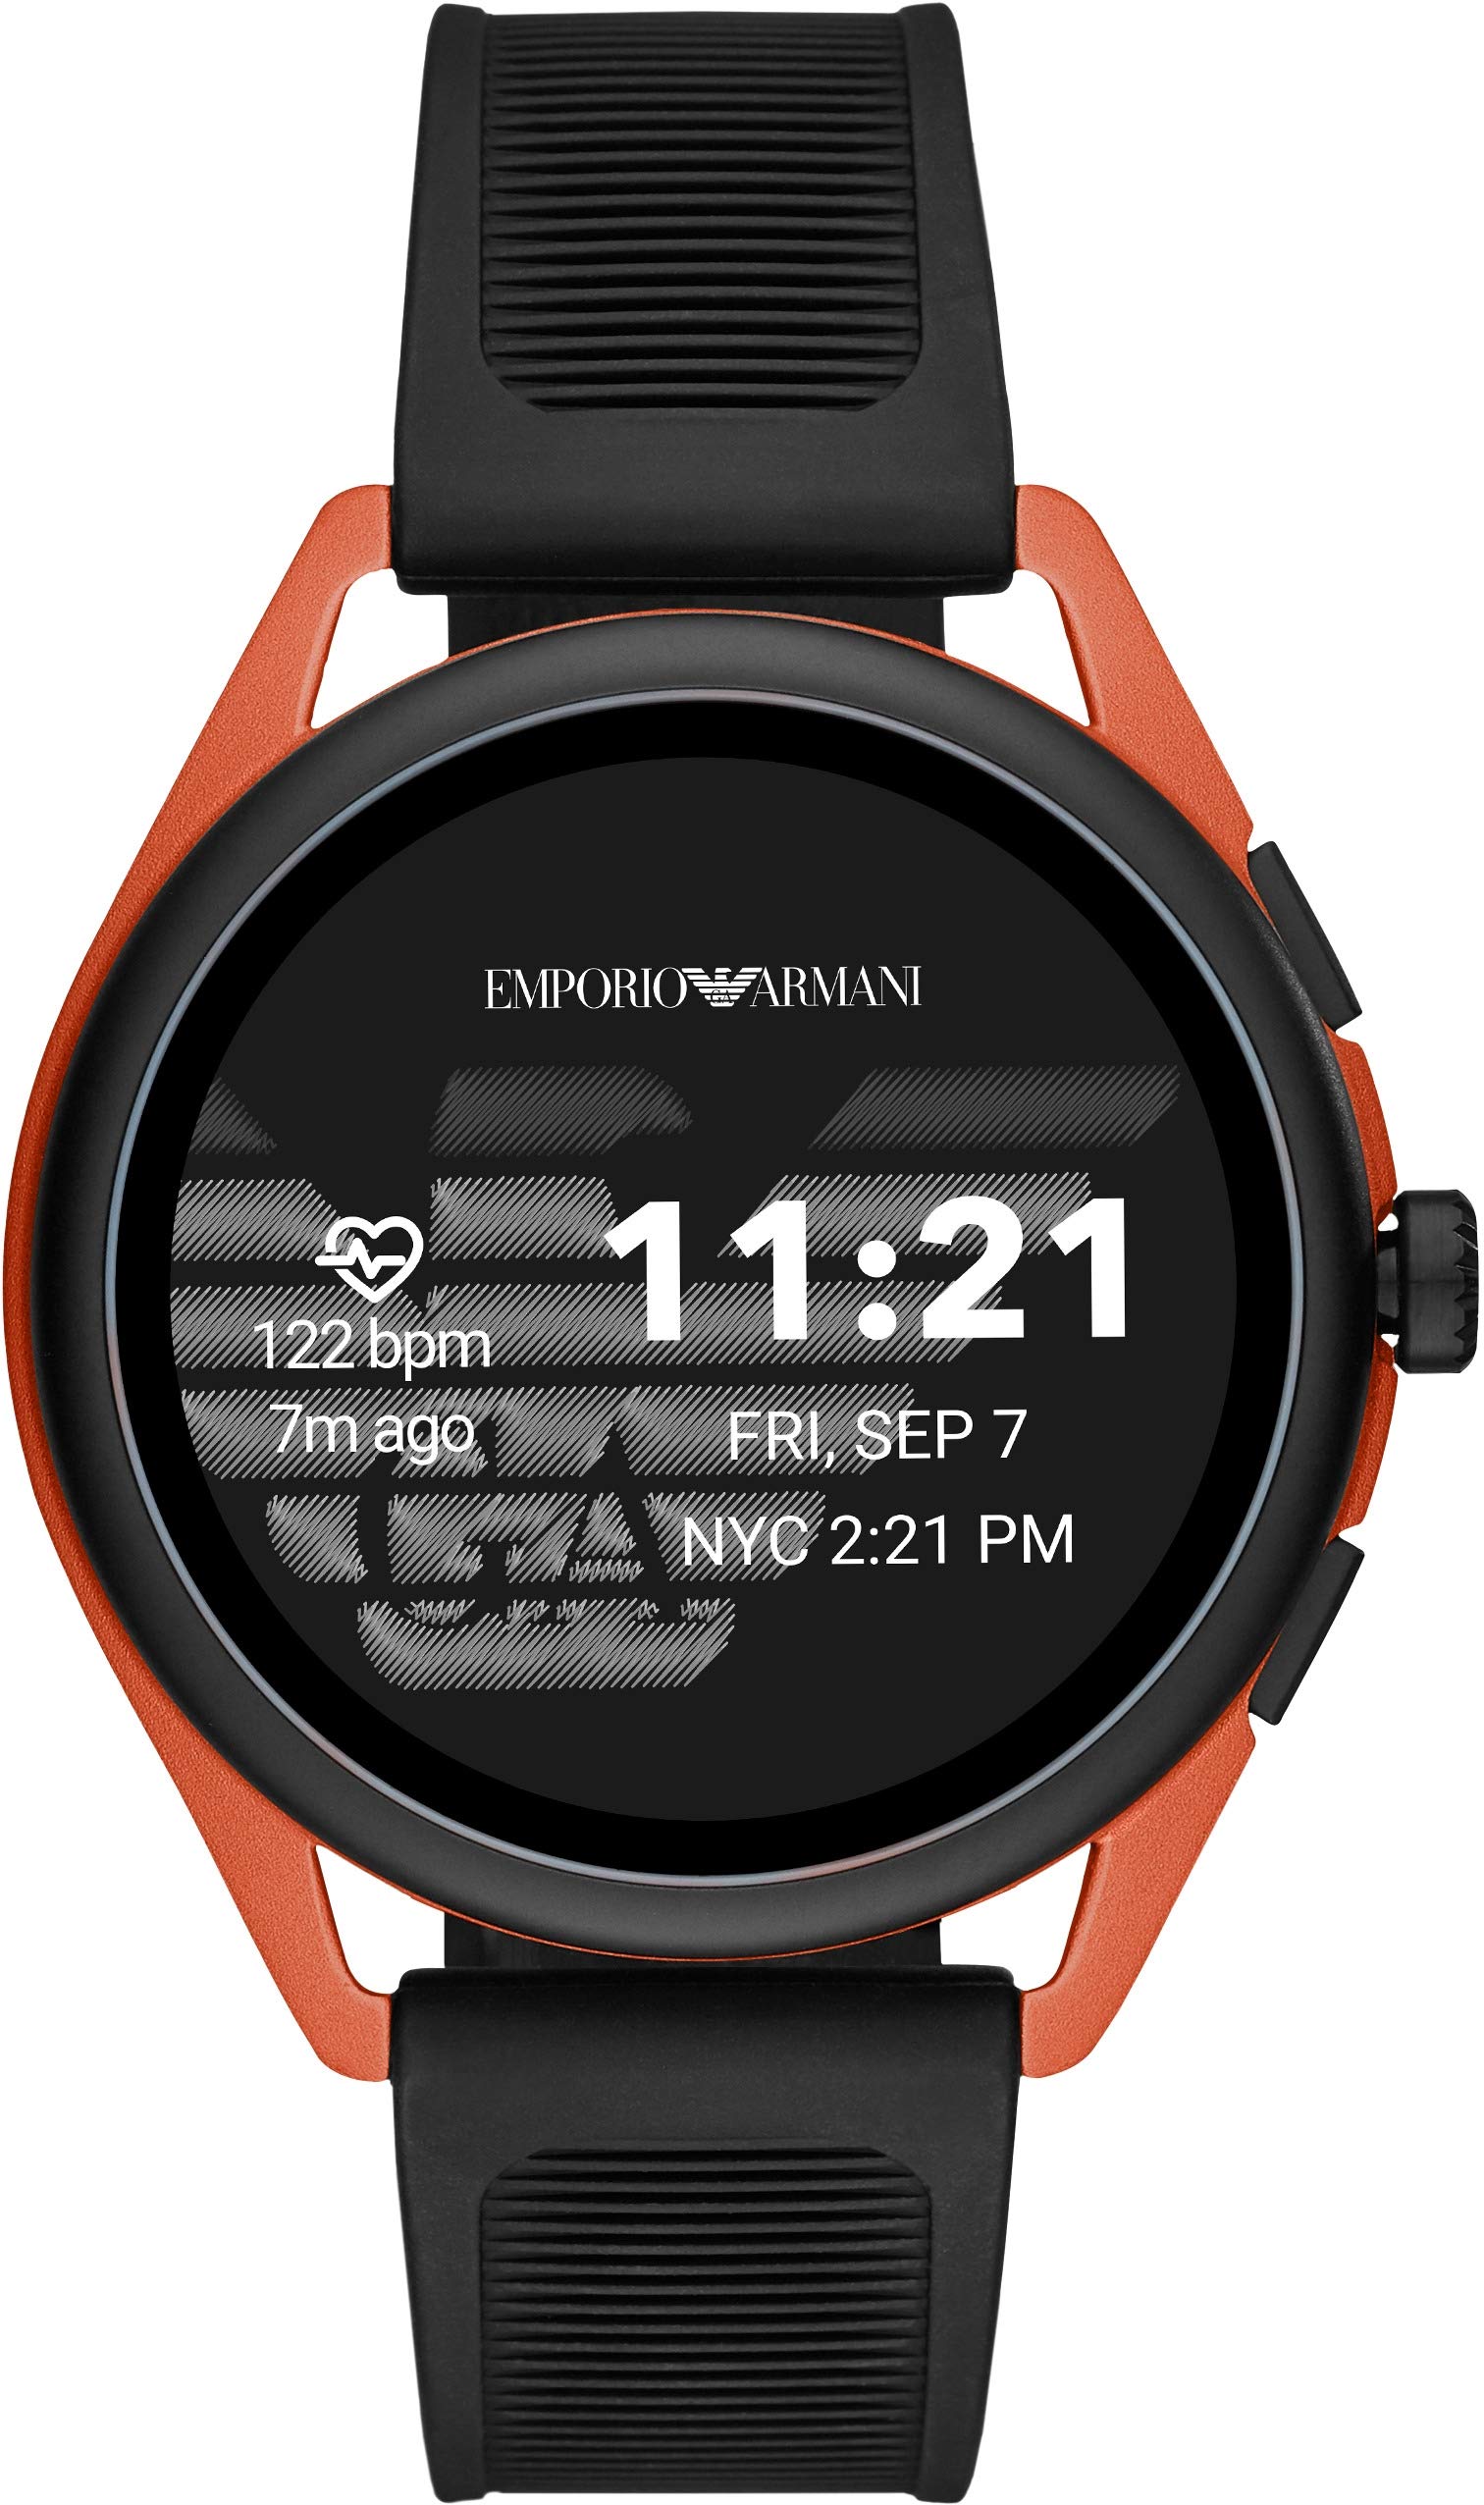 Introducir 65+ imagen emporio armani touchscreen smartwatch